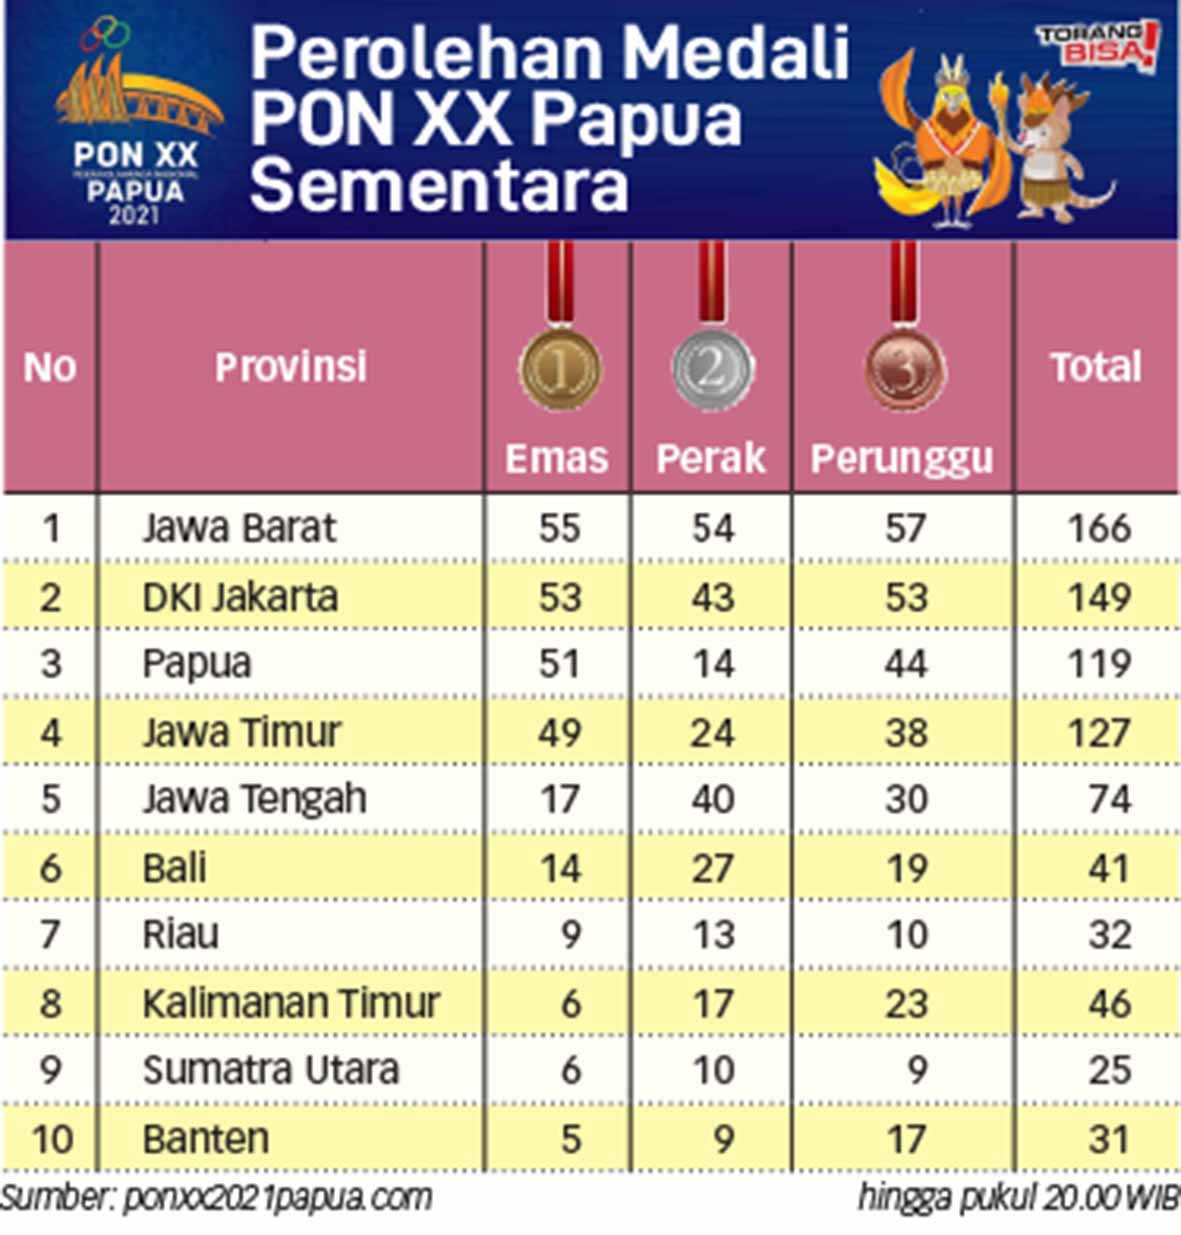 Perolehan Sementara Medali PON XX Papua